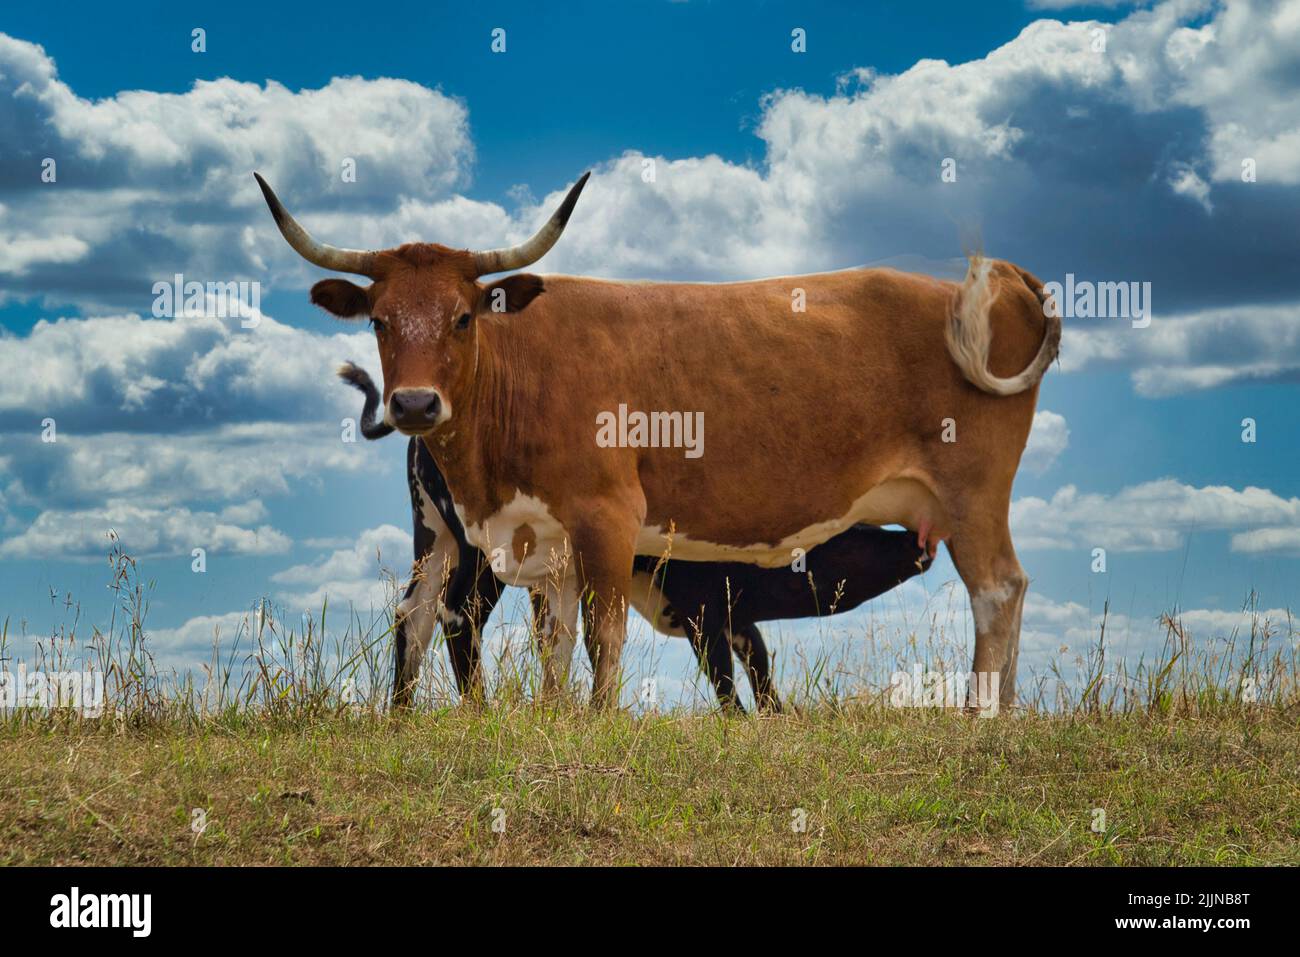 Eine Nahaufnahme eines Texas Longhorns, das auf Gras vor einem blau bewölkten Himmel steht Stockfoto